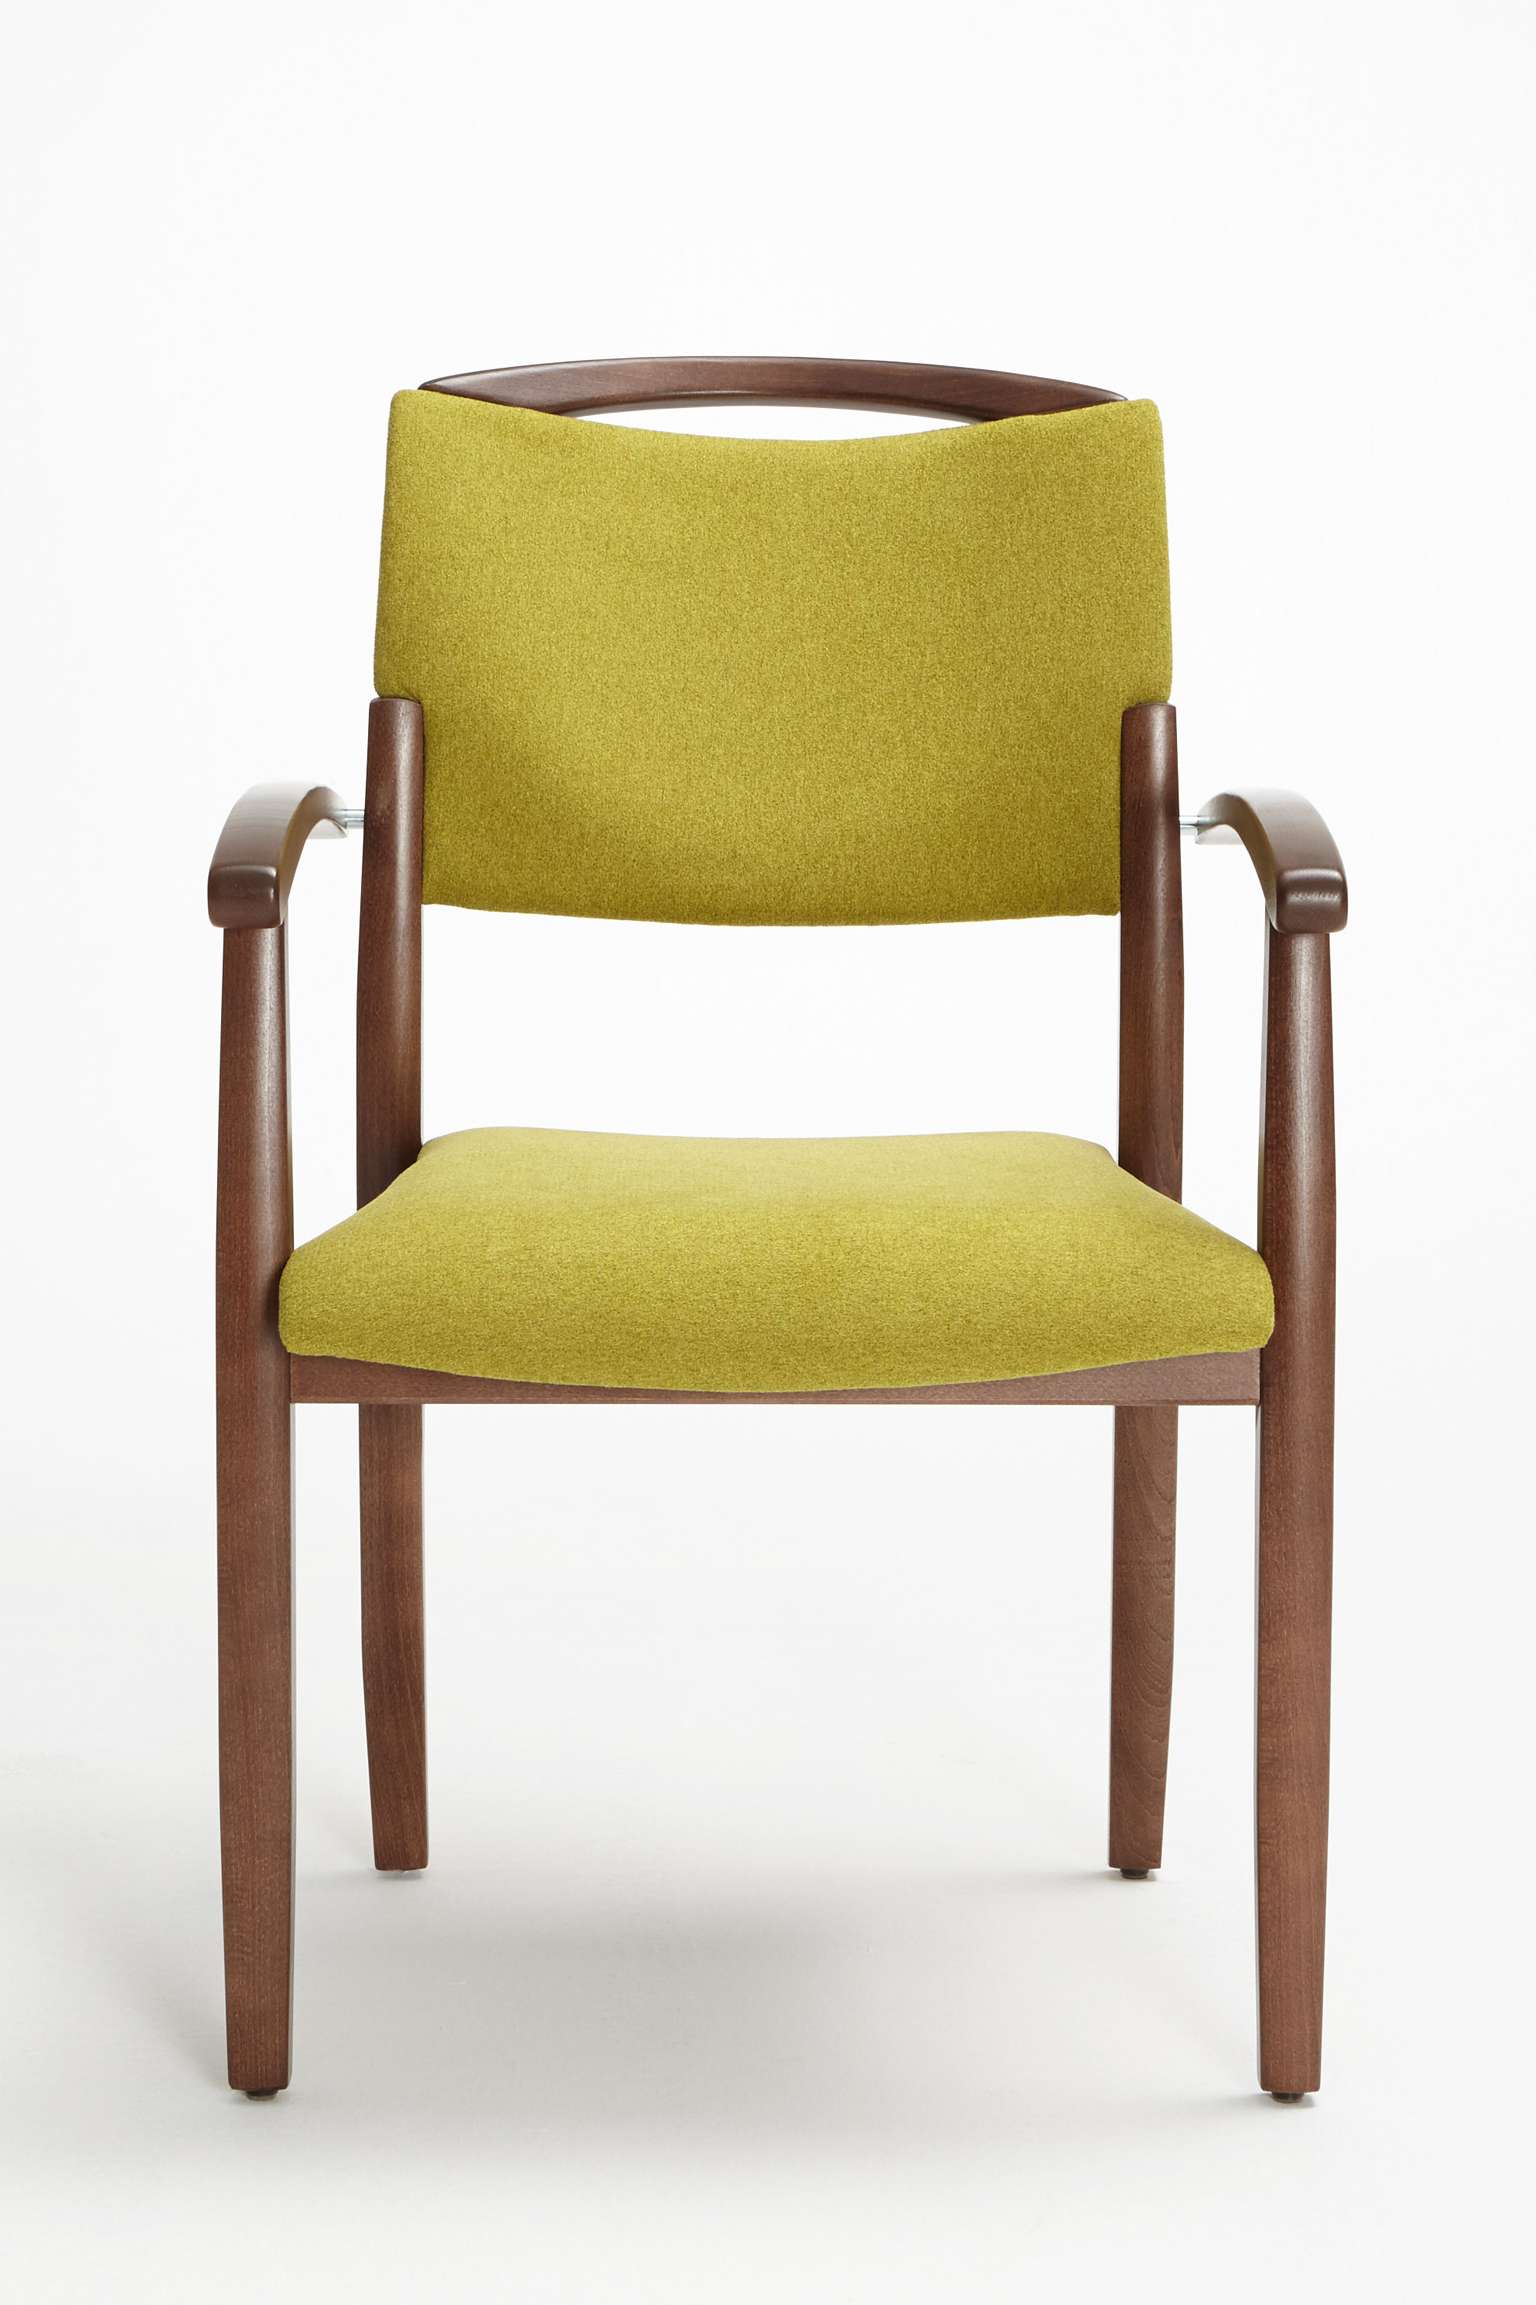 Modèle Fena version chaise empilable avec accoudoirs et main courante